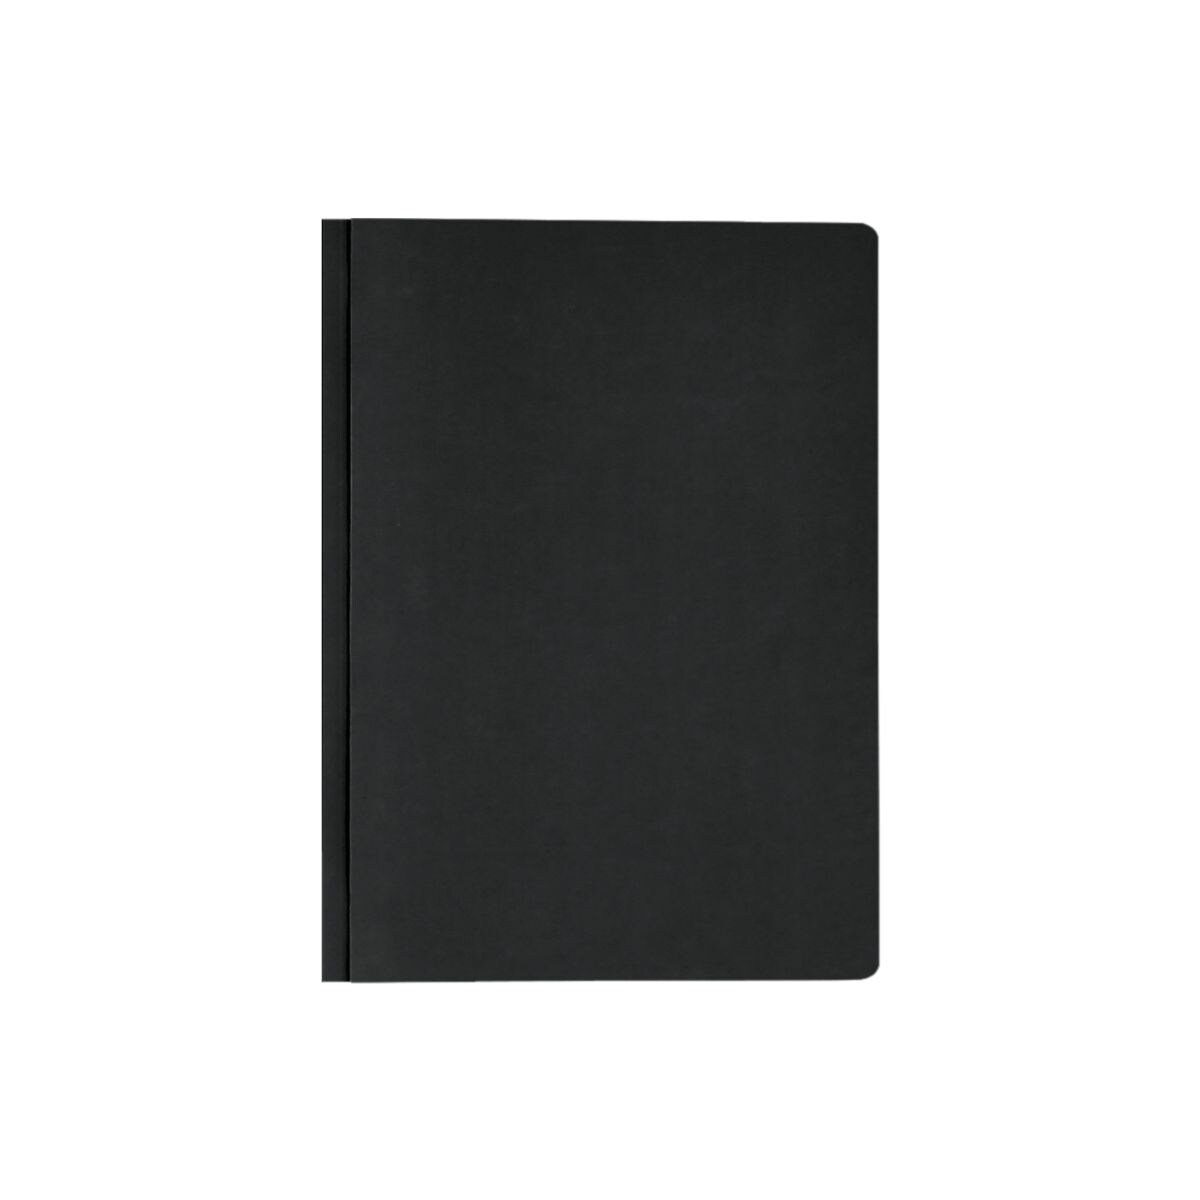 ELBA Hefter 10042122, Doppelhefter, Format DIN A4, aus Karton schwarz